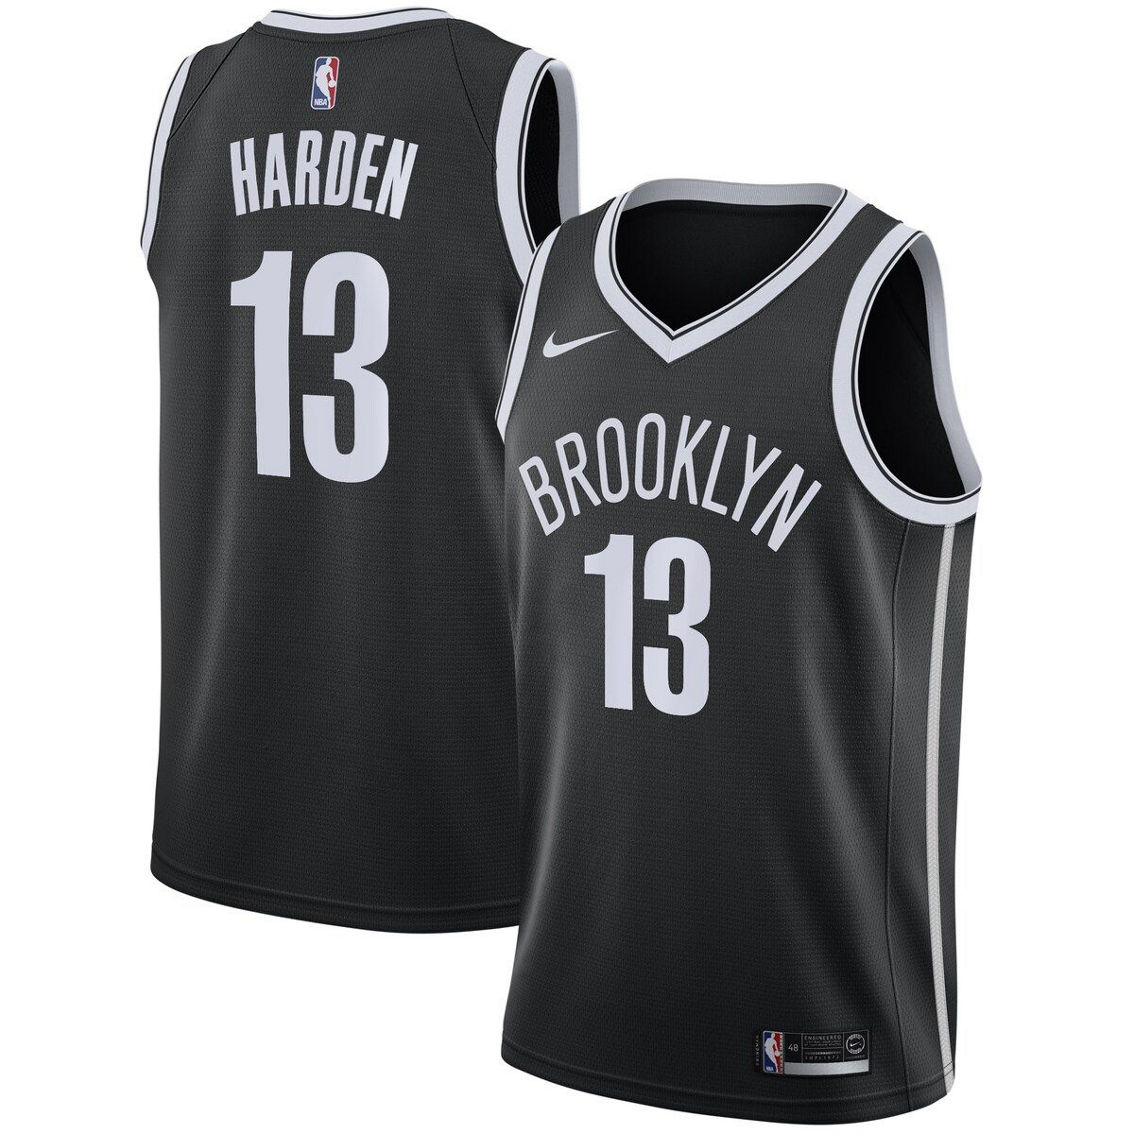 Nike Men's James Harden Black Brooklyn Nets 2020/21 Swingman Jersey - Icon Edition - Image 2 of 4